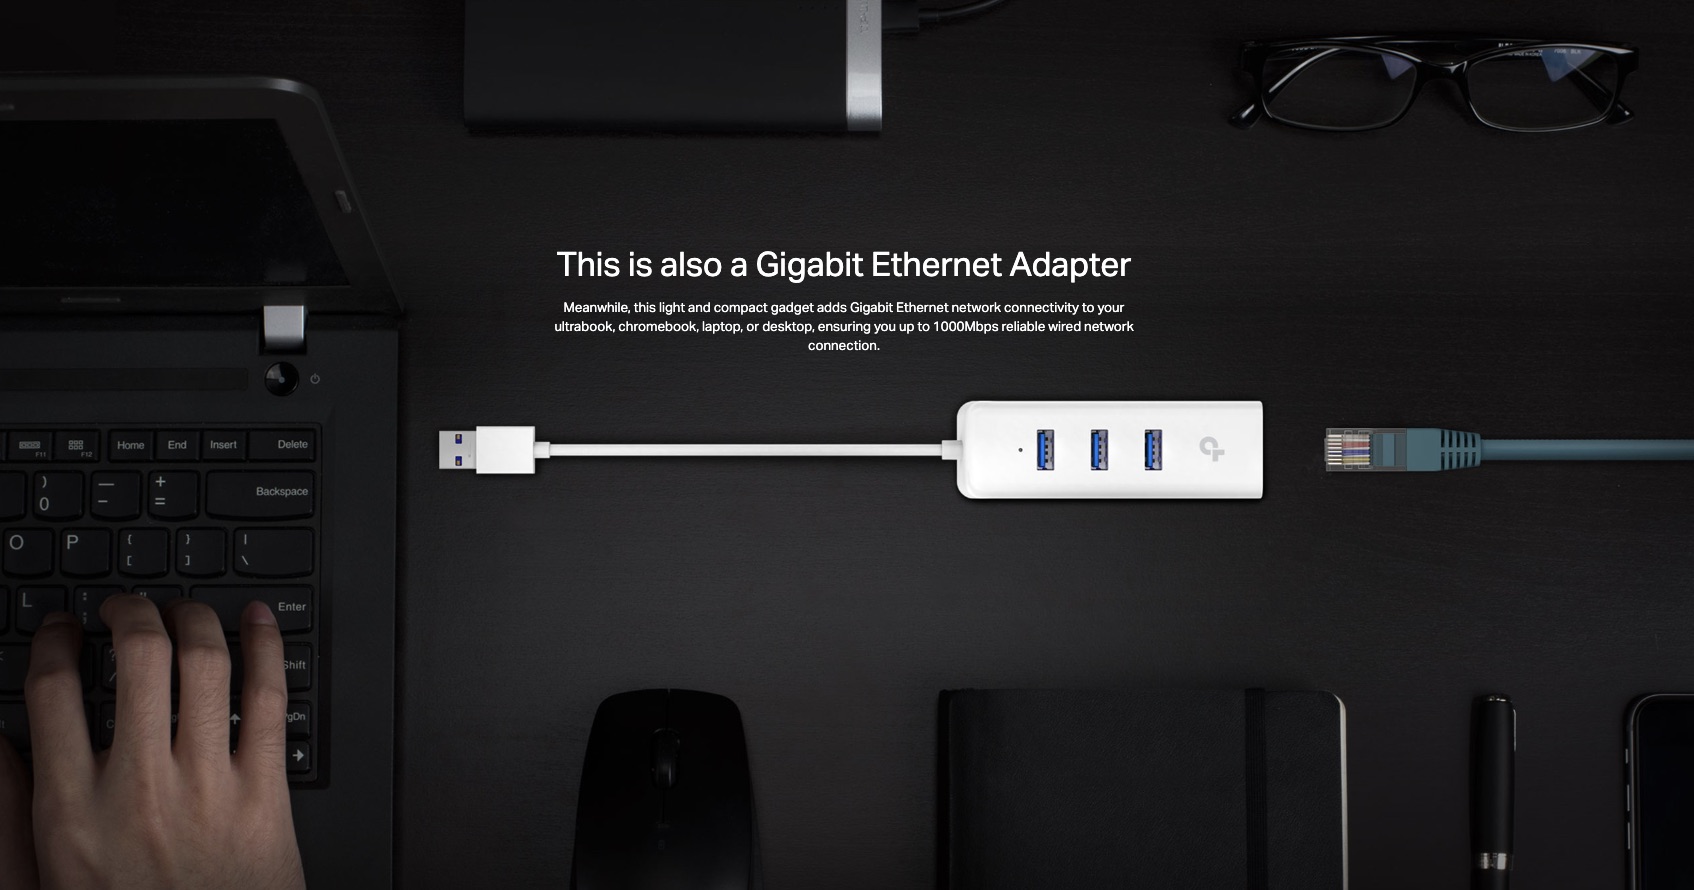 TP-Link-UE330-USB-3.0-3-Port-Hub-And-Gigabit-Ethernet-Adapter-2-in-1-USB-Adapter-Description-3